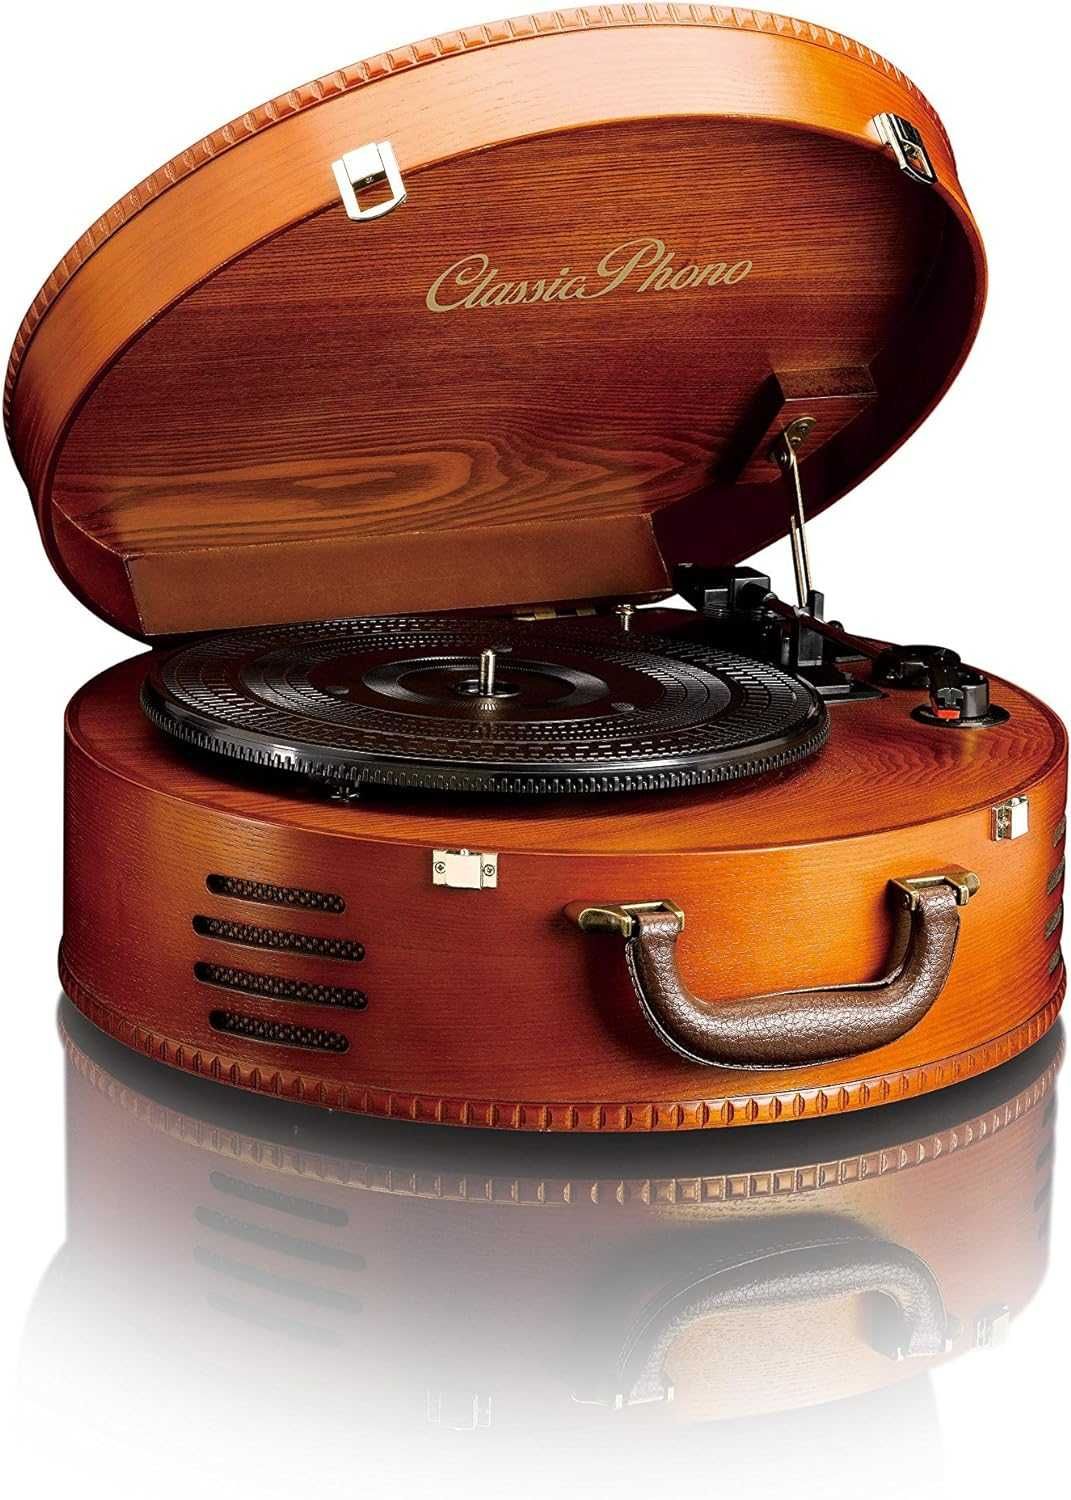 Gramofon LENCO Classic Phono TT-34 brązowy